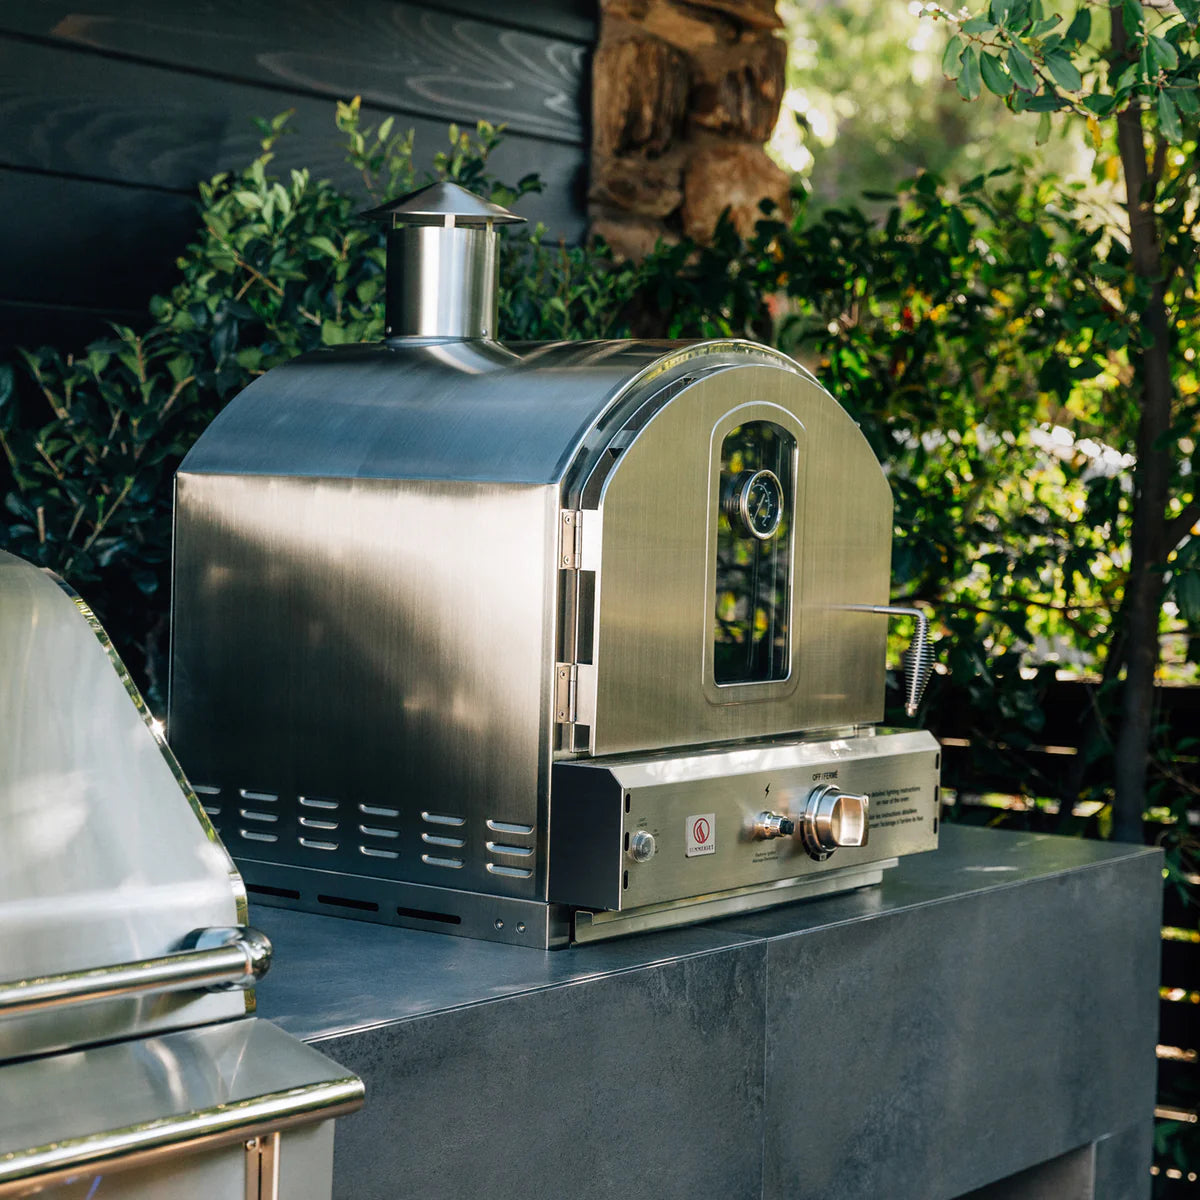 Summerset Built-In Outdoor Oven